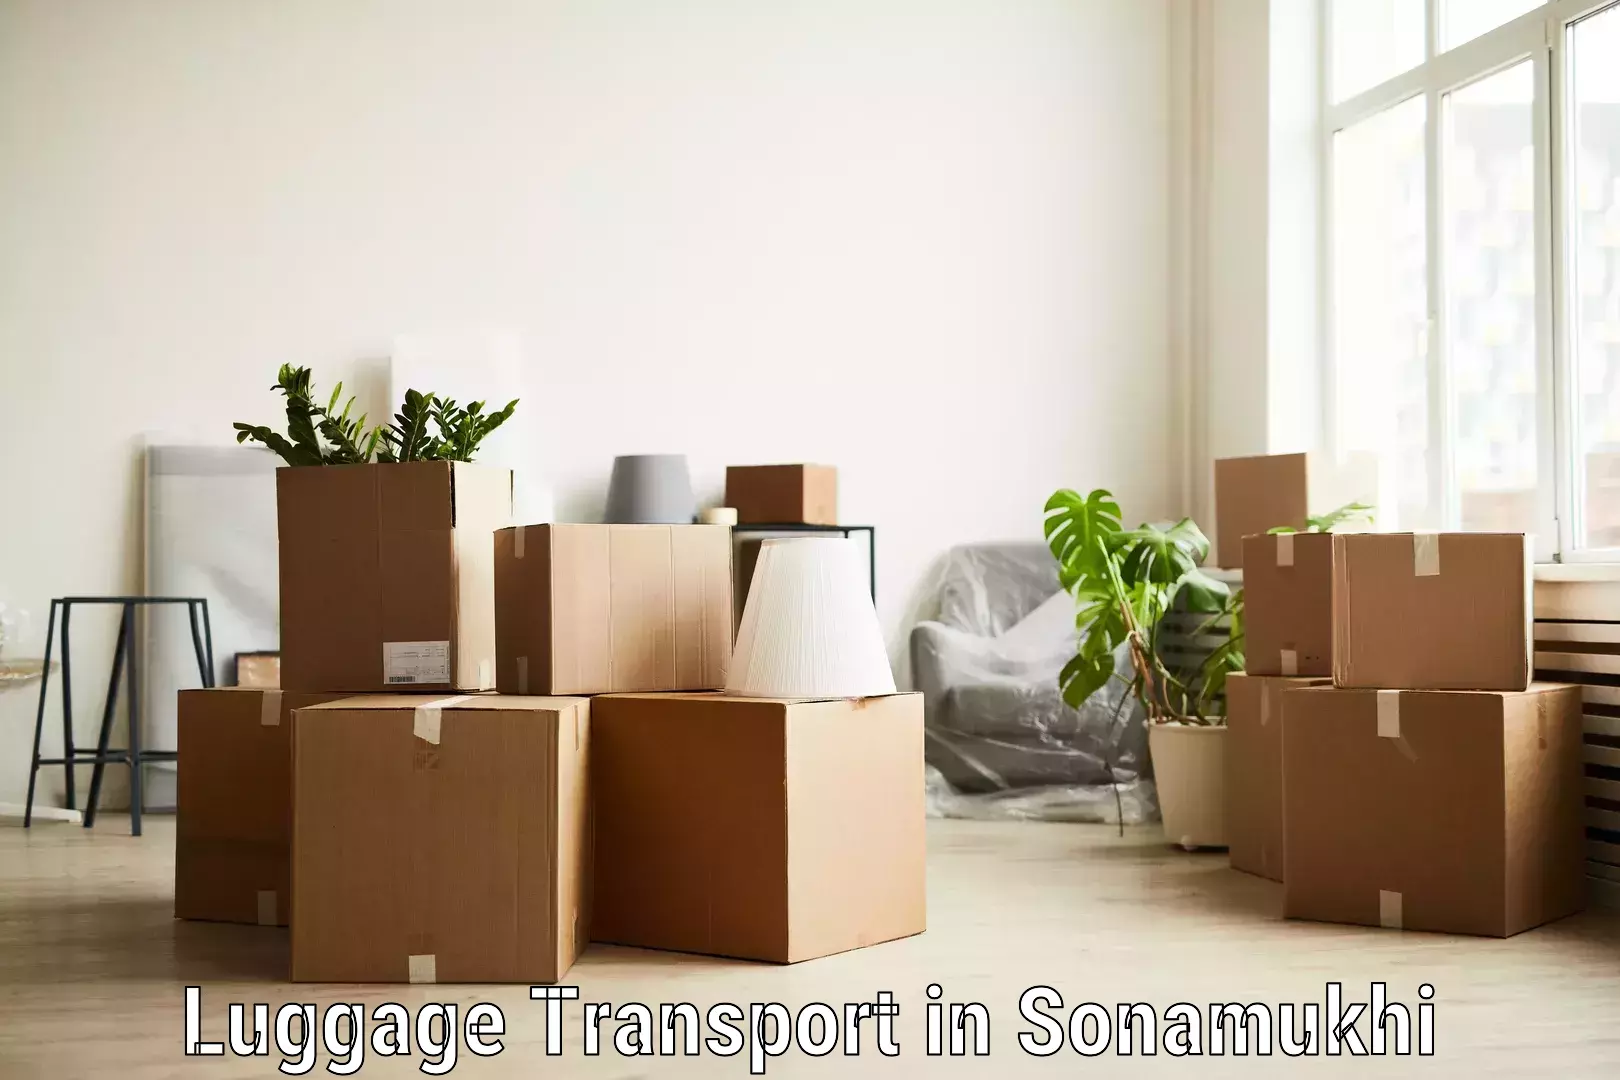 Luggage transport guidelines in Sonamukhi